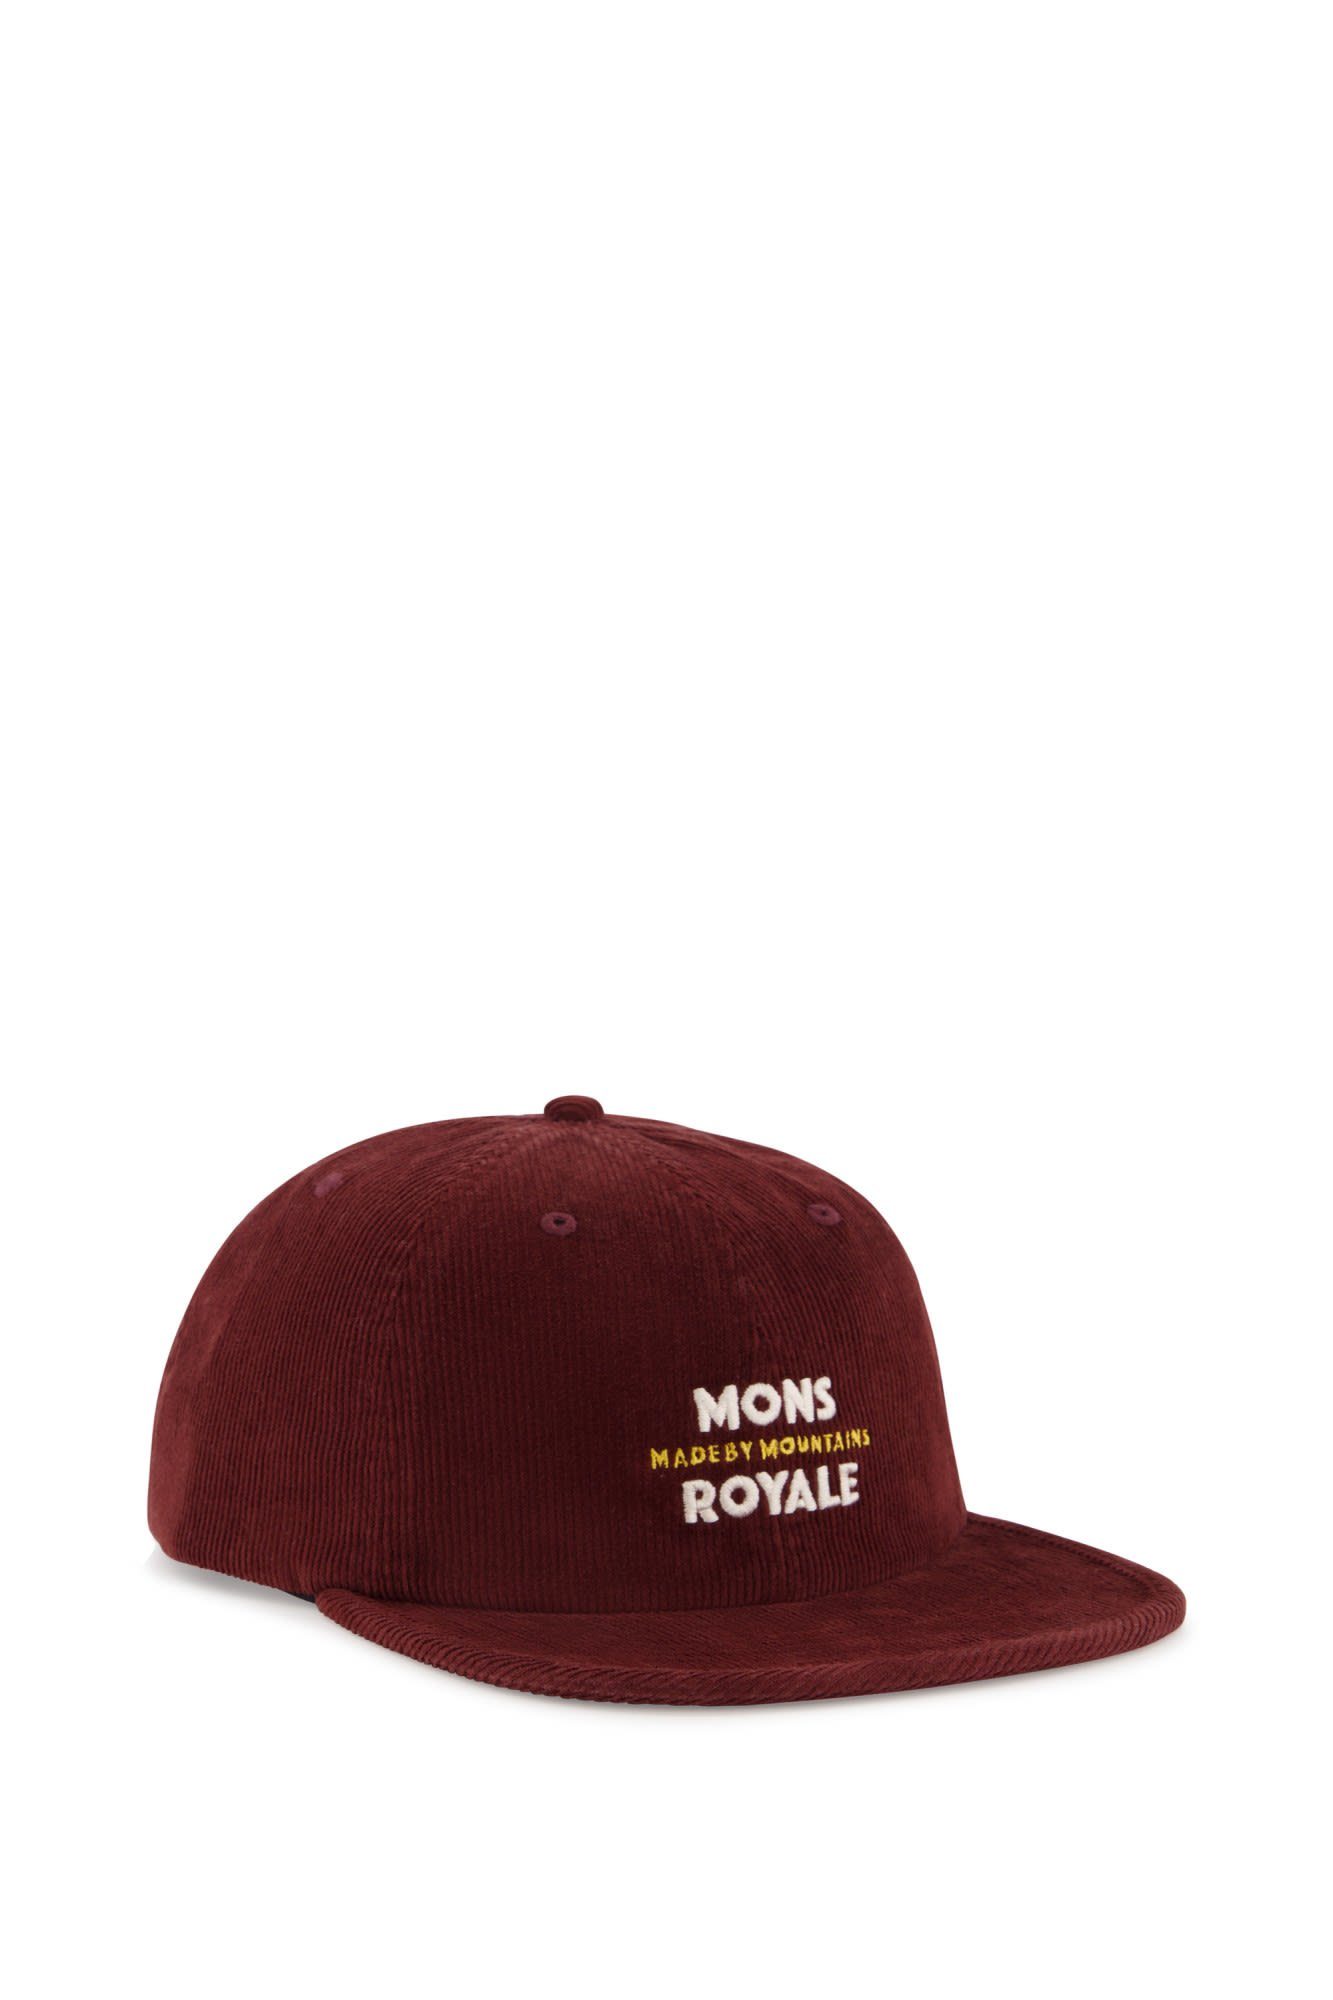 Royale Roam Corduroy Royale Mons Dark Mons Accessoires Chocolate Beanie Cap